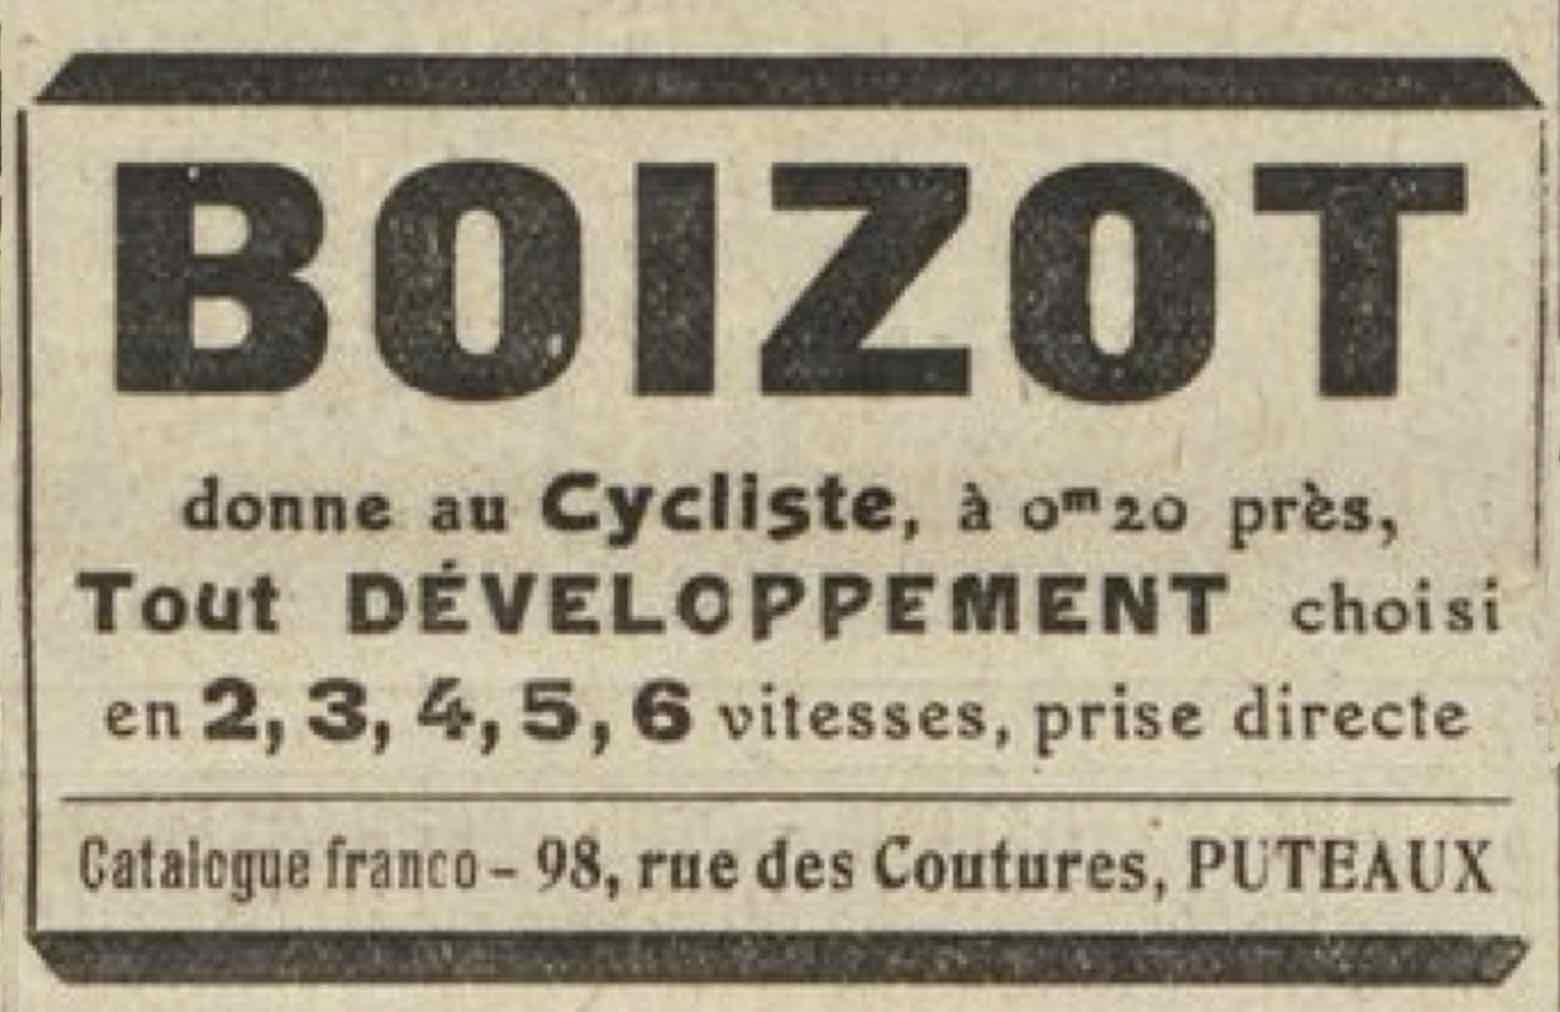 T.C.F. Revue Mensuelle March 1913 - Boizot advert main image